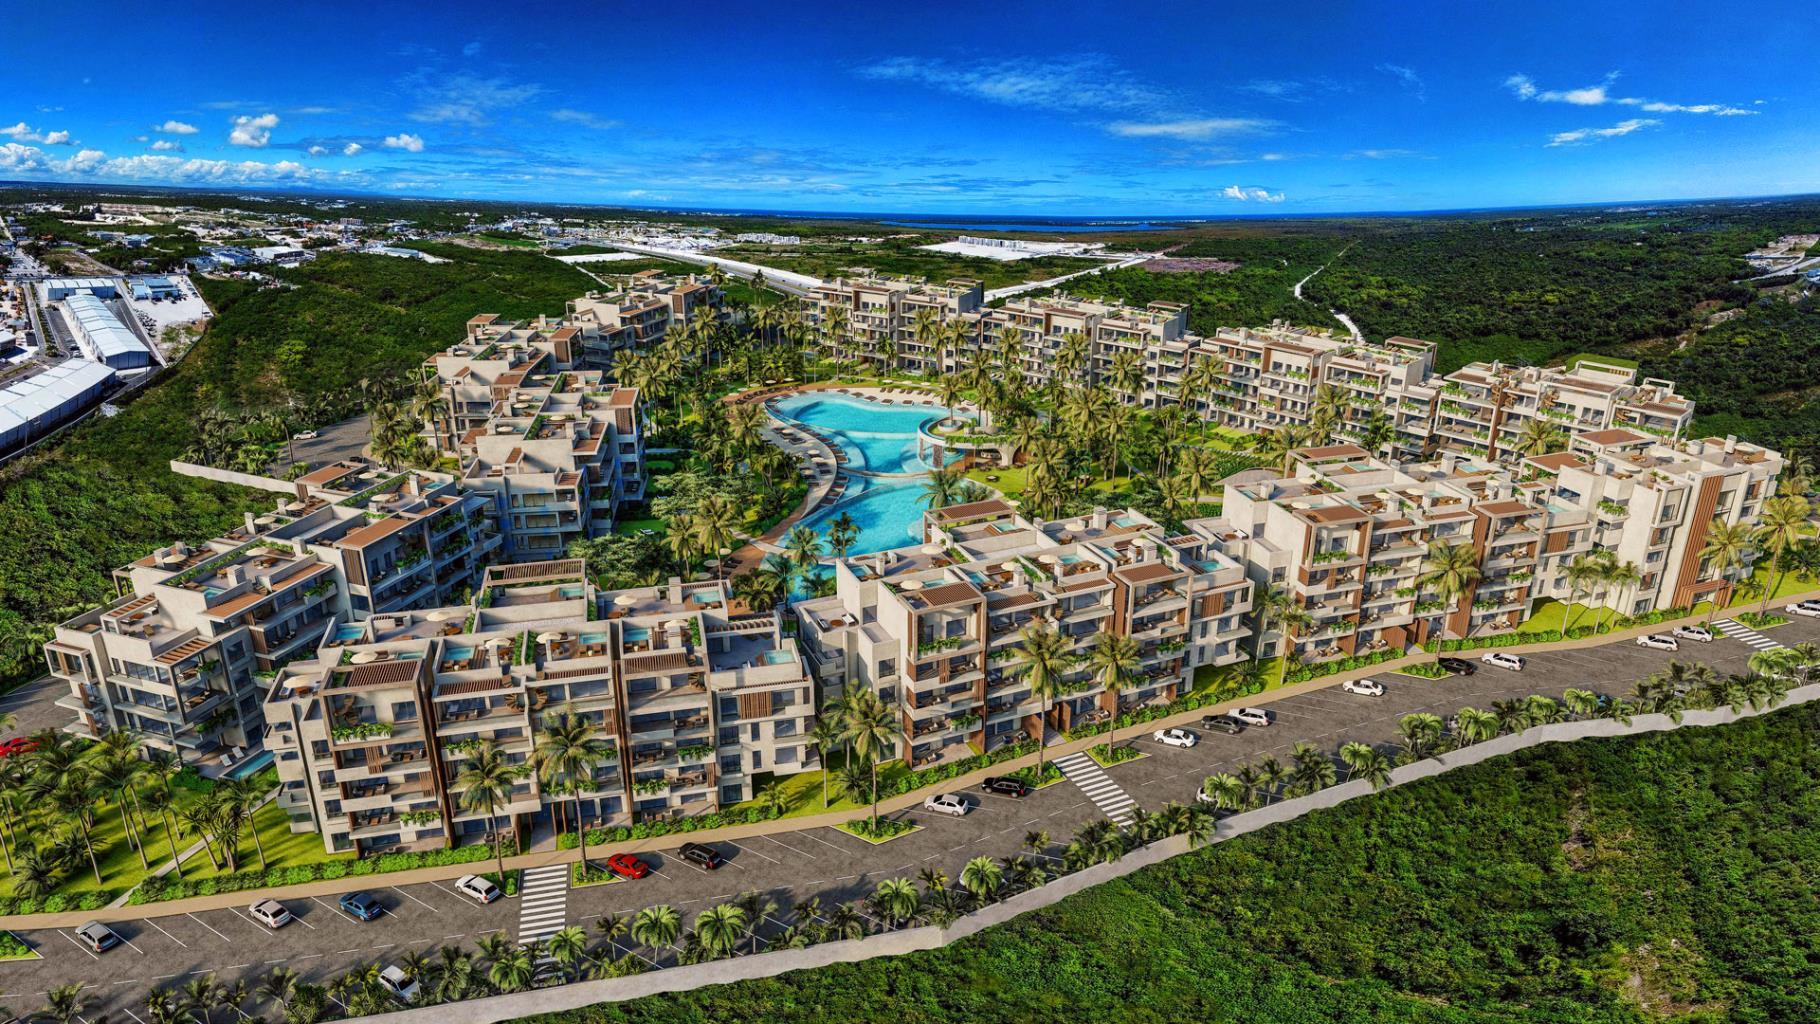 Viva cerca de la acción: nueva inversión primaria o de alquiler en Punta Cana.